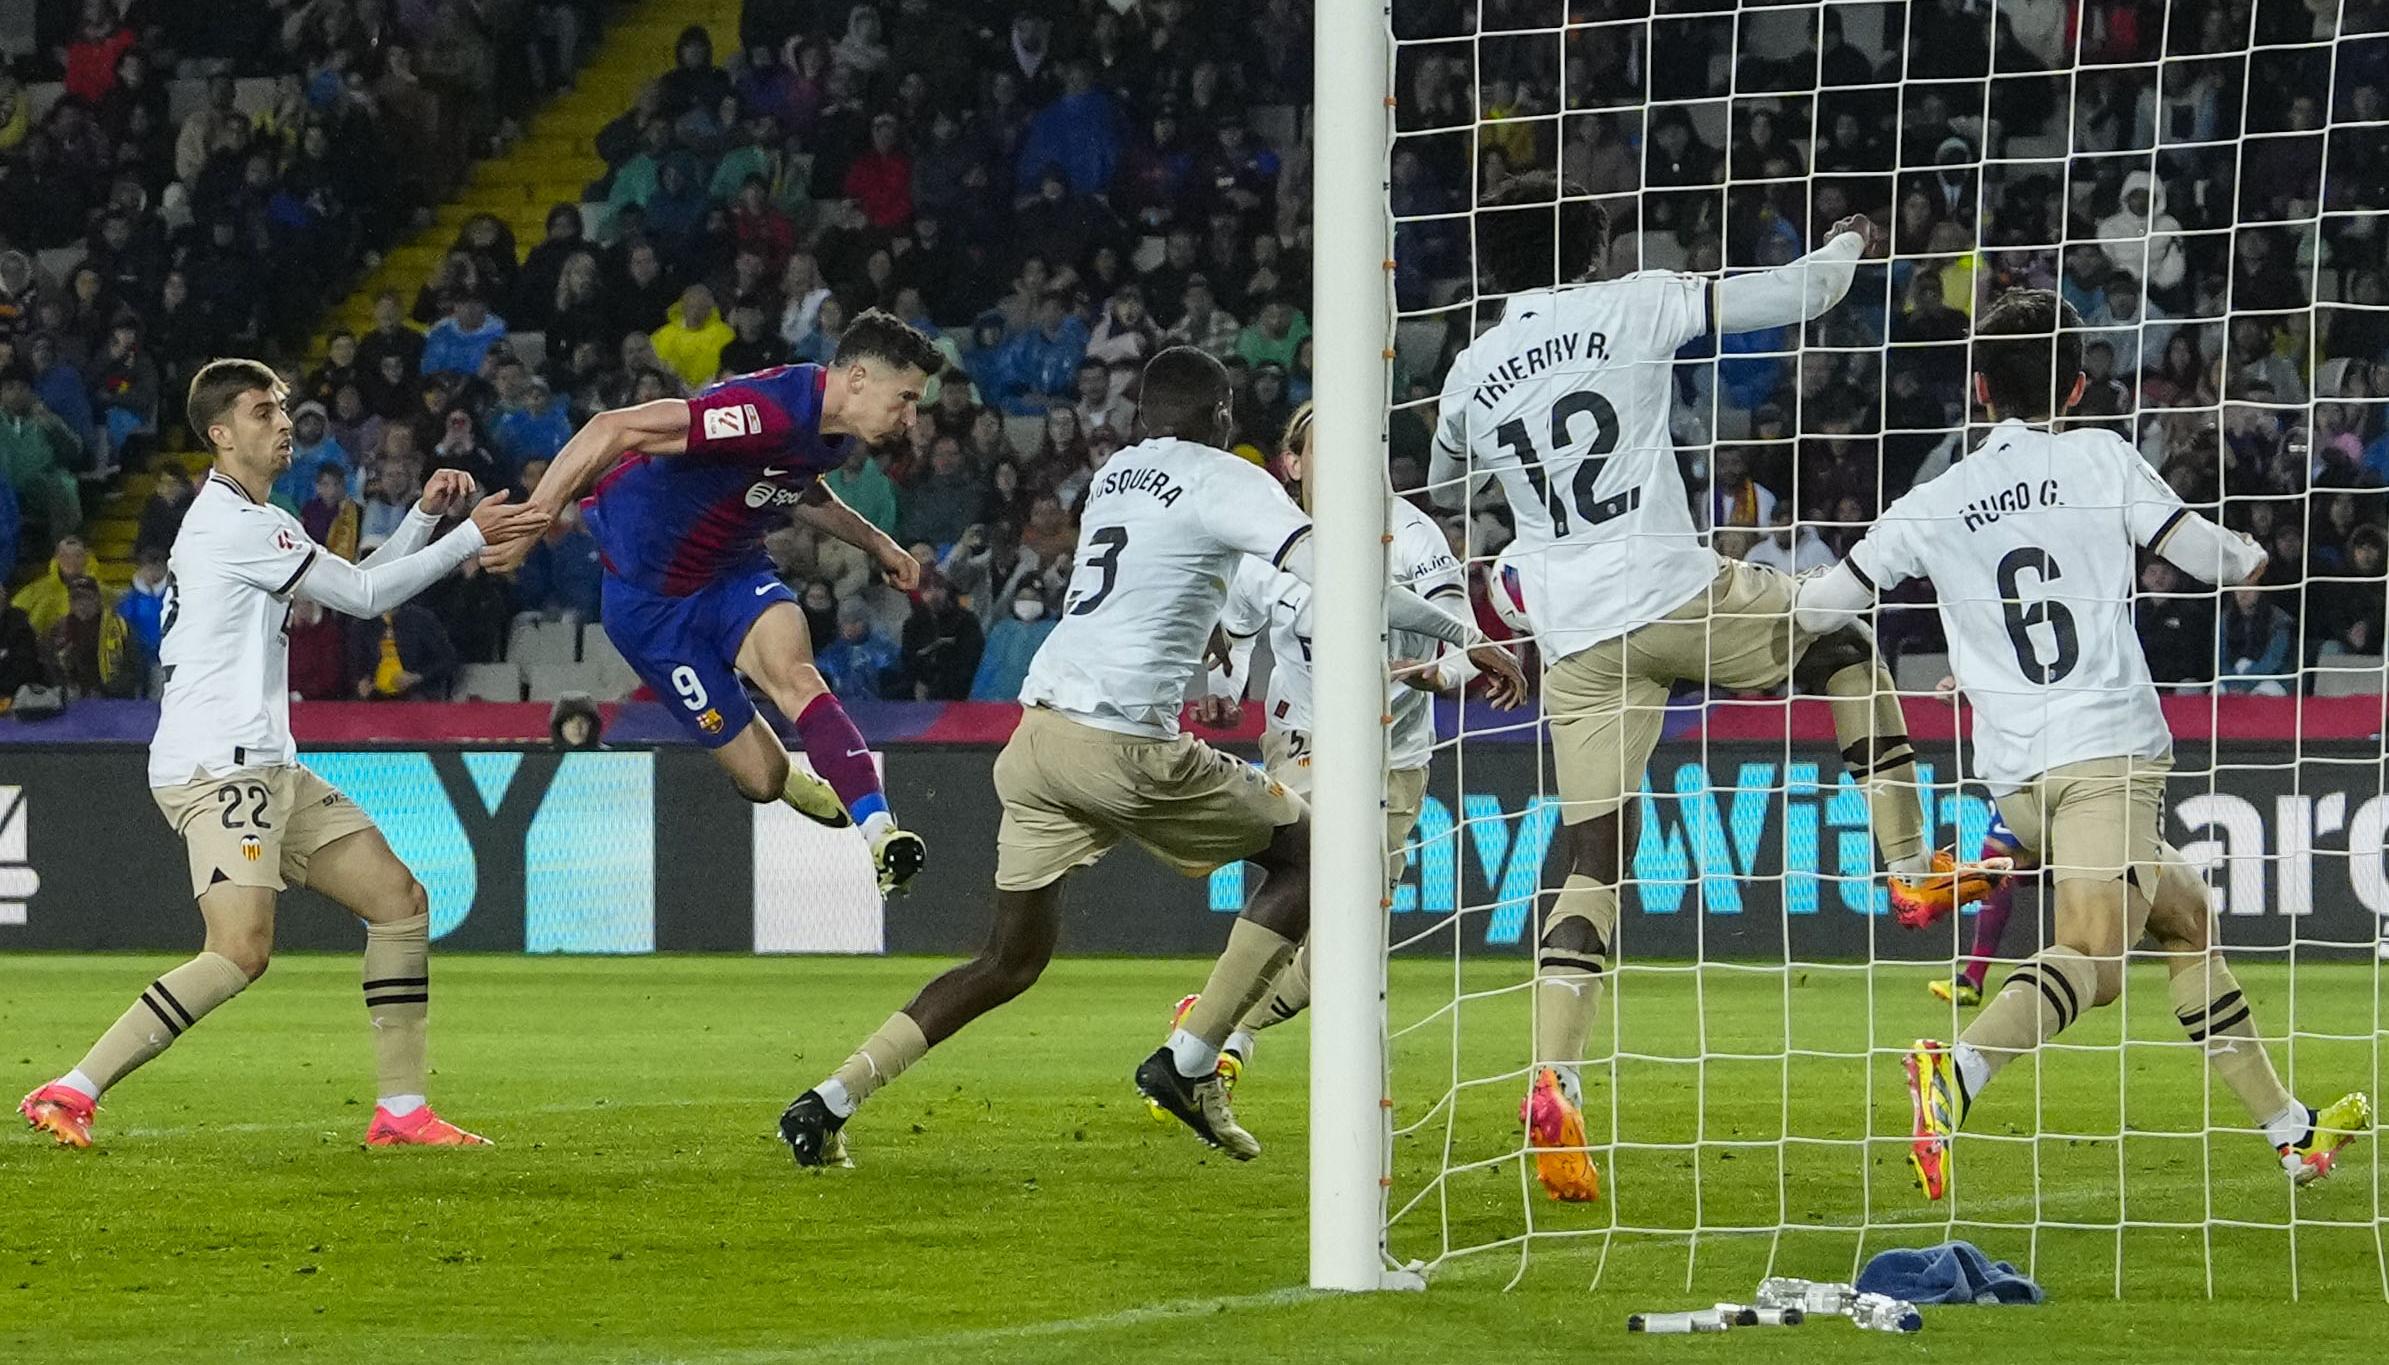 Cabezazo con el que Roberto Lewandowski marcó el segundo gol del Barcelona, primero en su cuenta personal.